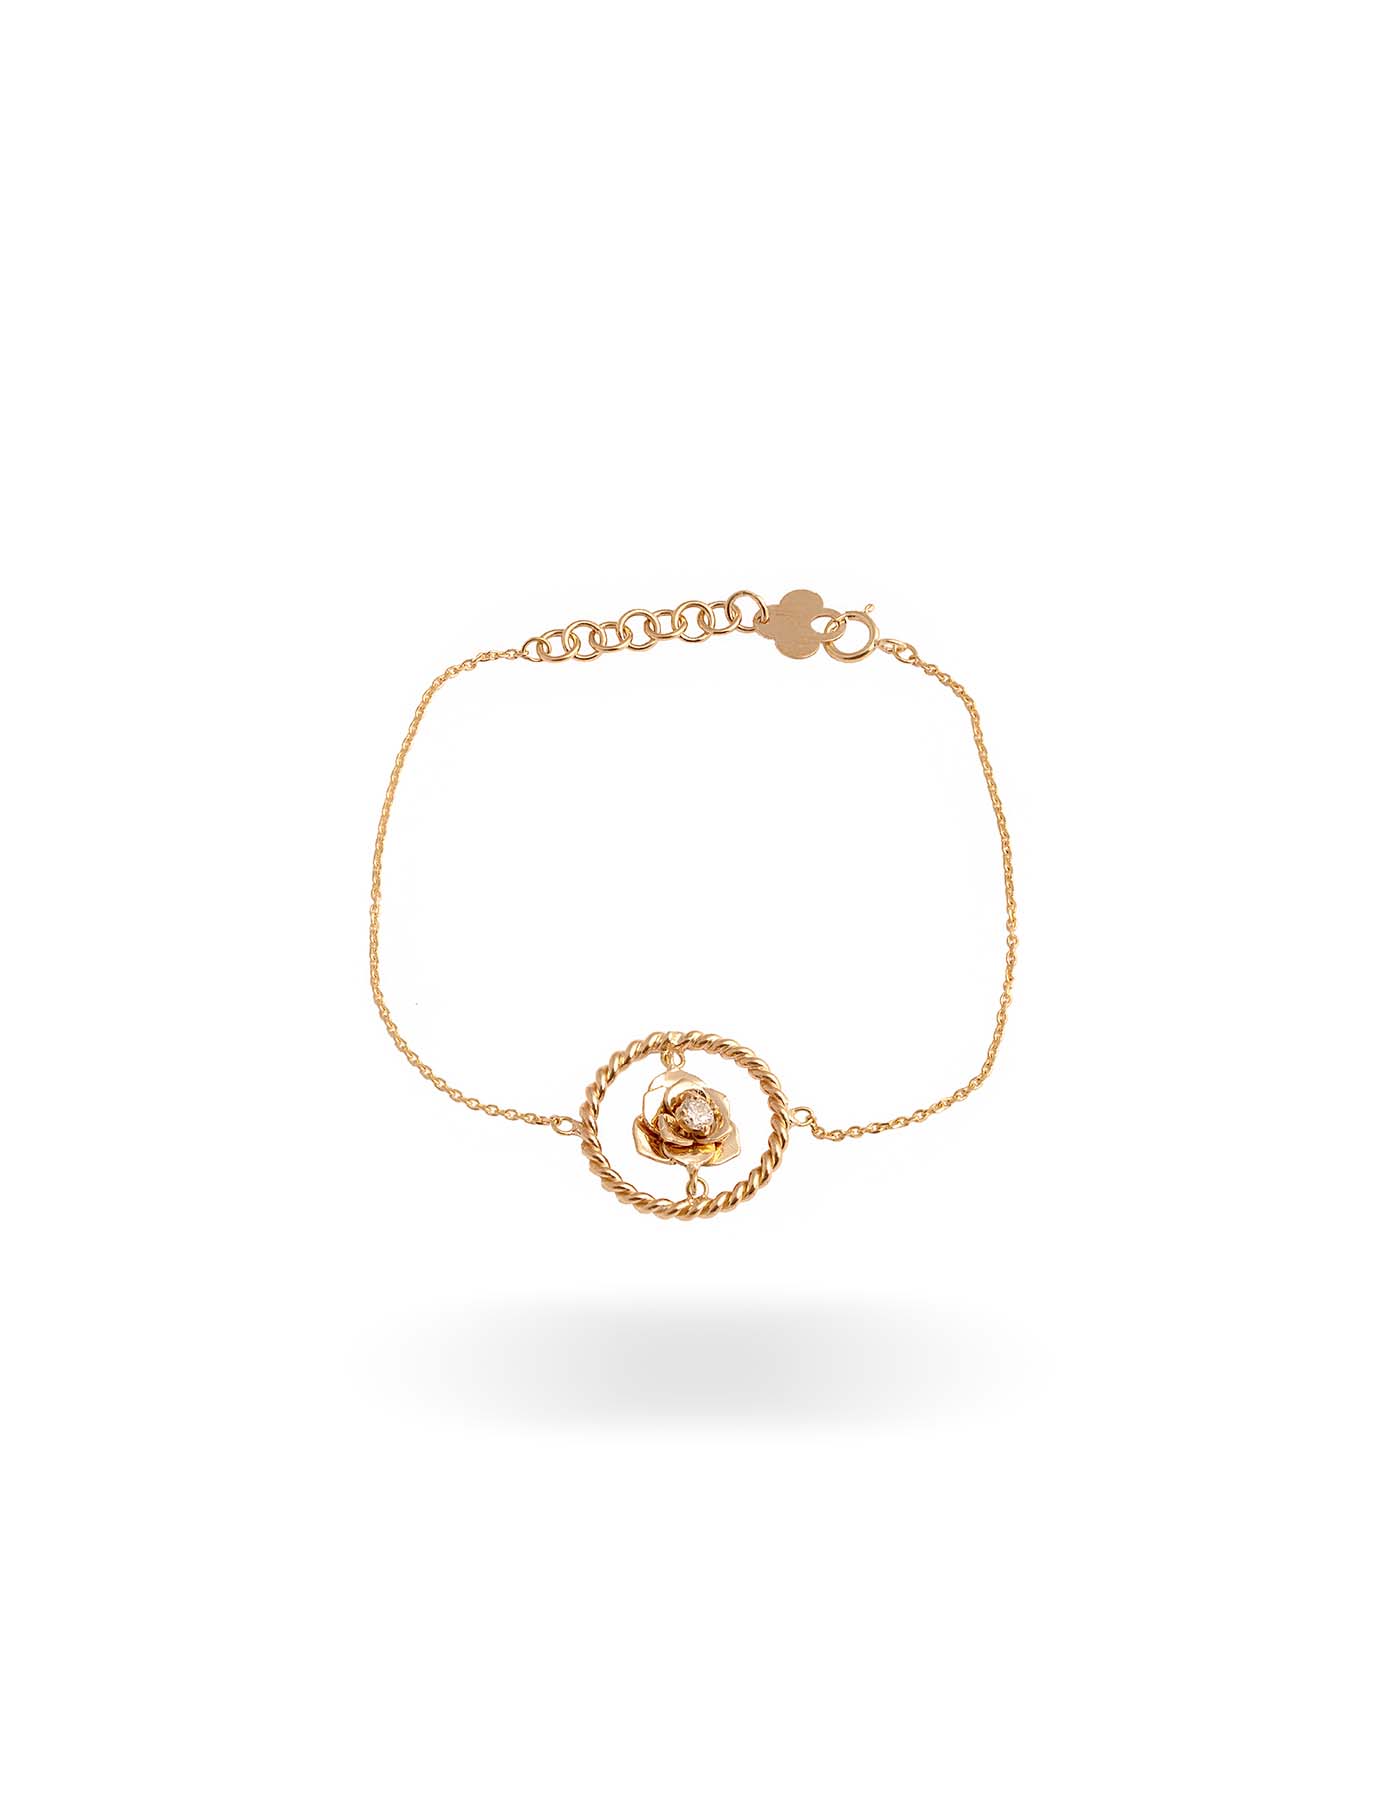 تصویر دستبند گل رز و حلقه از کالکشن دستبند گالری طلا ارل 